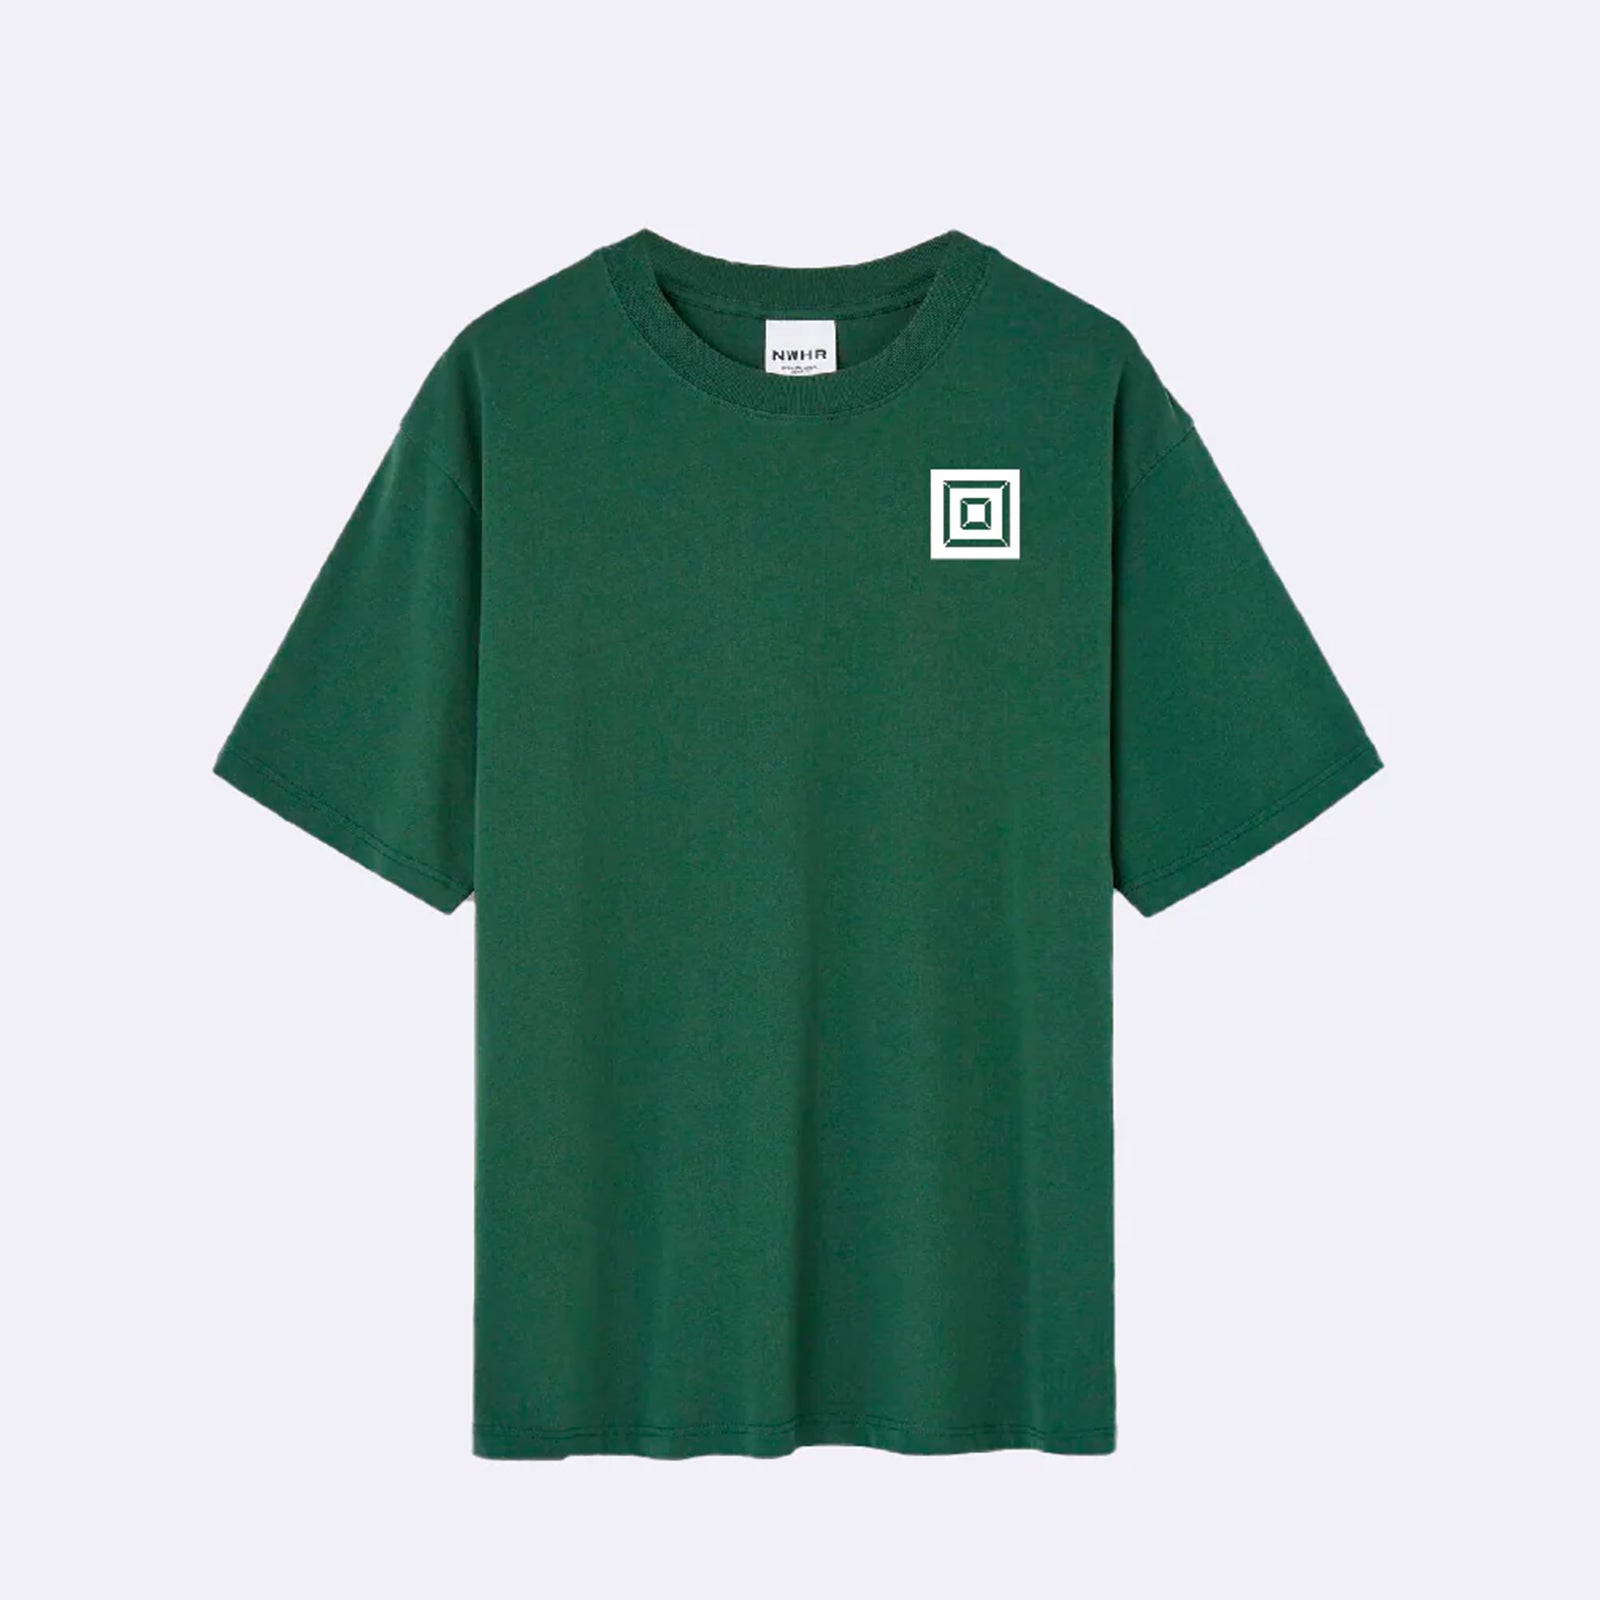 Camiseta básica de color verde de MGV15, parte delantera